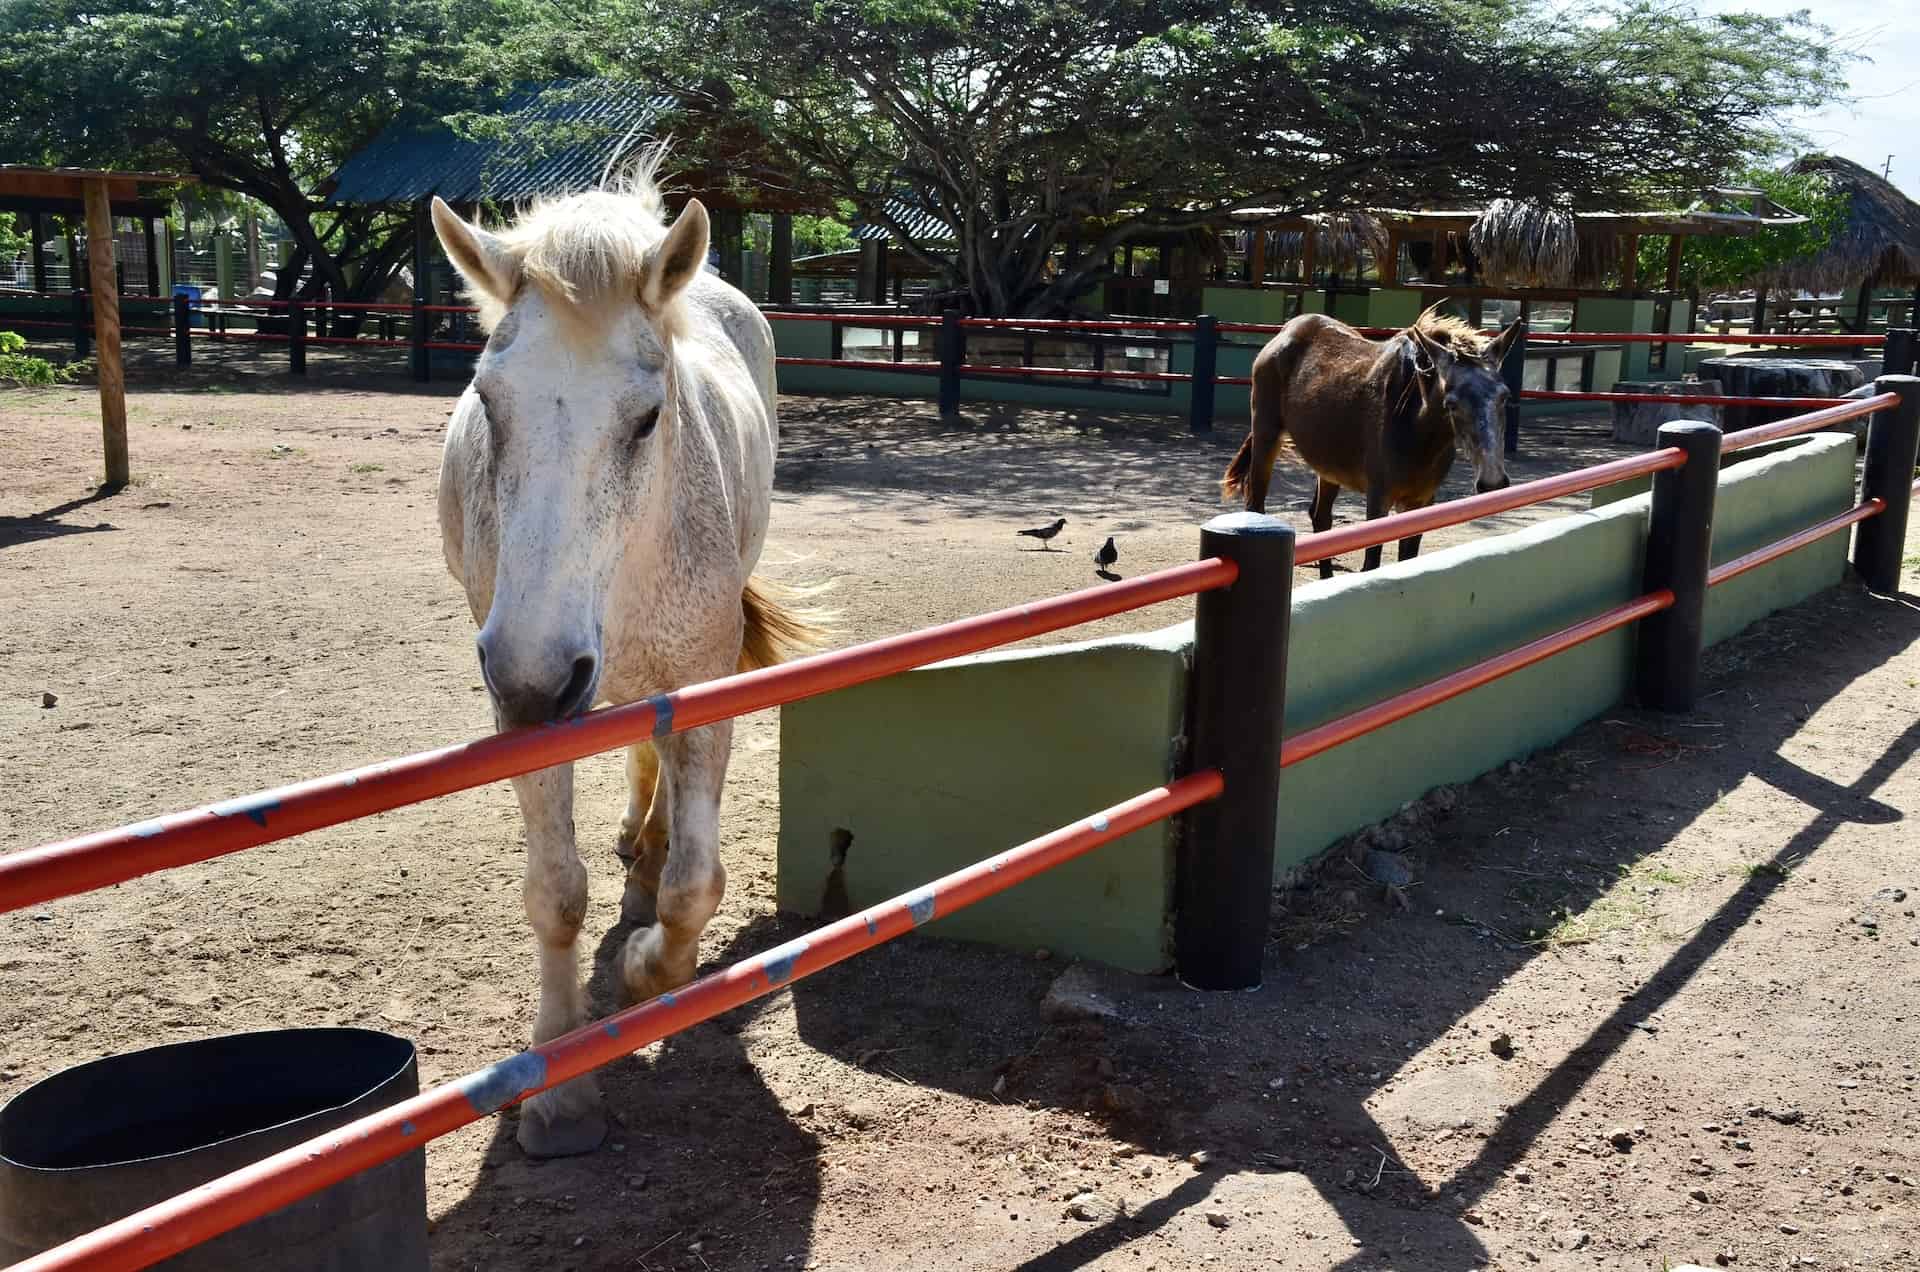 Horses at Philip's Animal Garden in Noord, Aruba